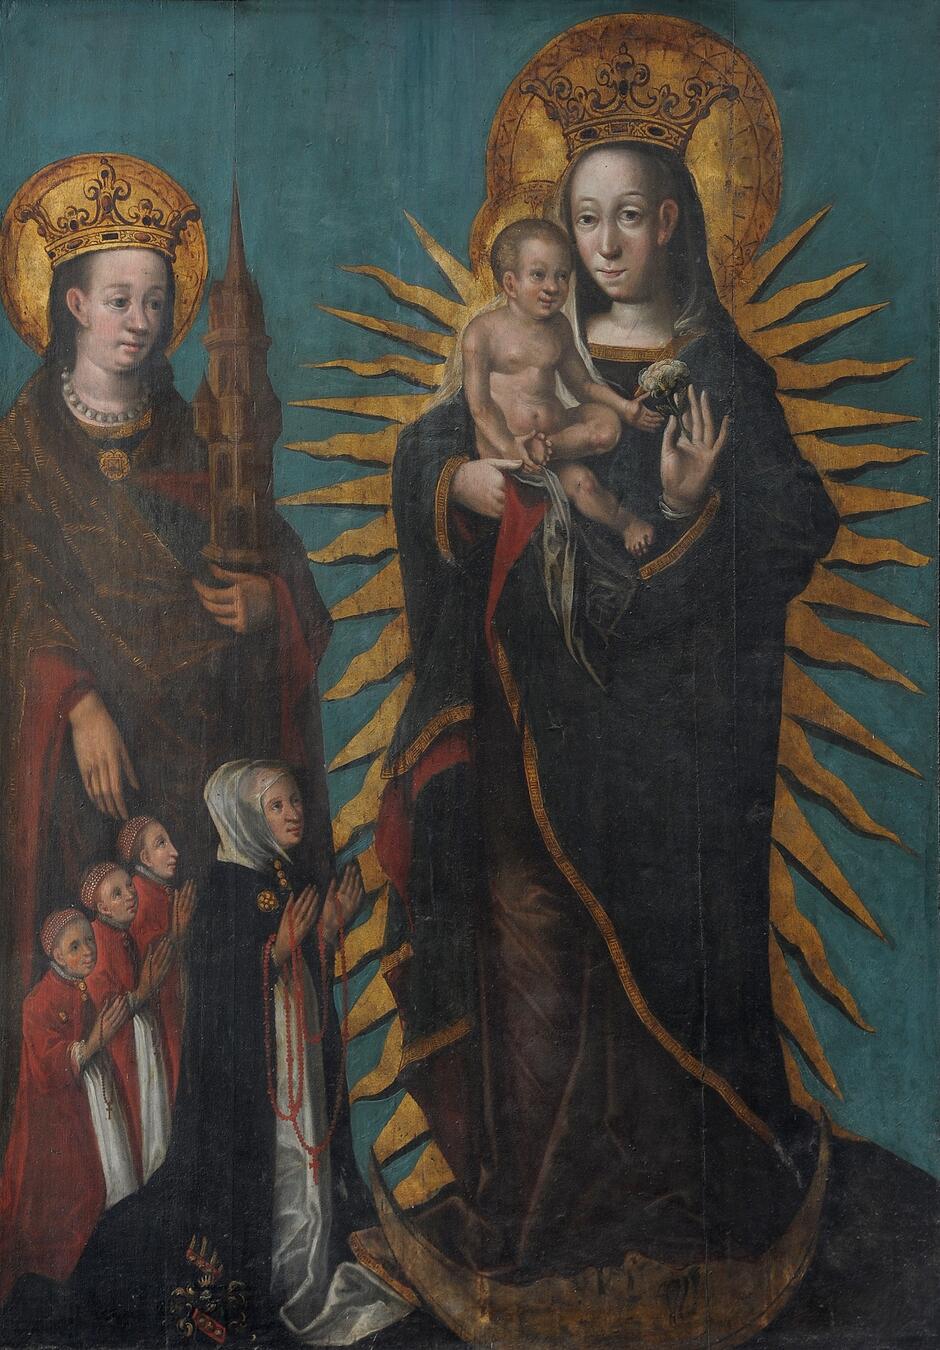 Na zdjęciu widzimy epitafium obrazowe przedstawiające Marię z Dzieciątkiem Jezus na ręku, otoczoną złotymi promieniami. Obok nich stoi święta Barbara trzymająca model wieży, a u ich stóp klęczą postaci w modlitewnych pozach, prawdopodobnie fundatorzy obrazu; całość znajduje się w Bazylice Mariackiej w Gdańsku